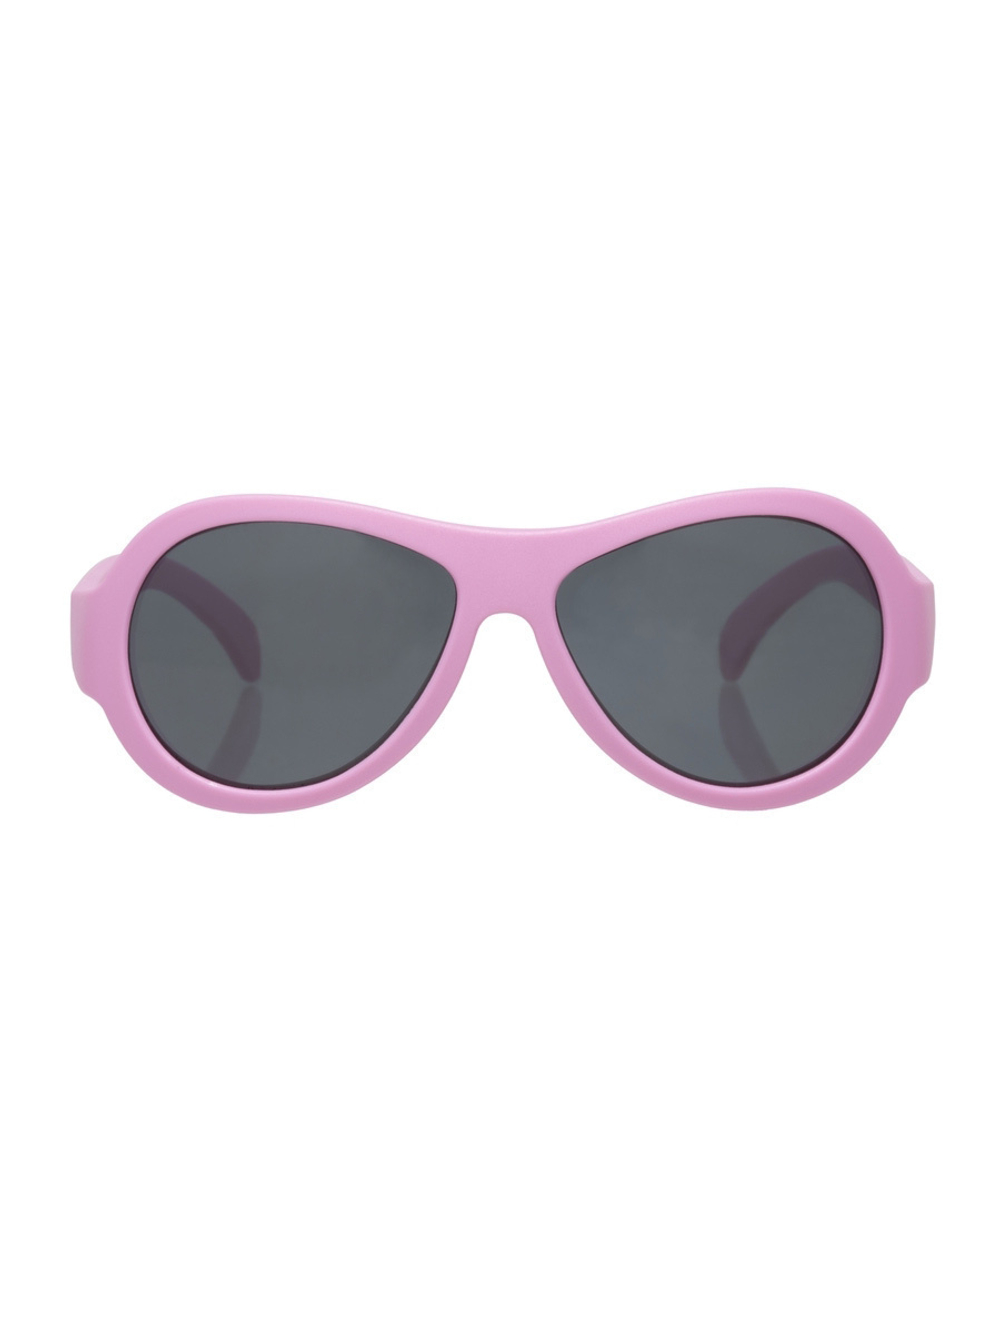 С/з очки Babiators Original Aviator. Розовая принцесса (Princess Pink)